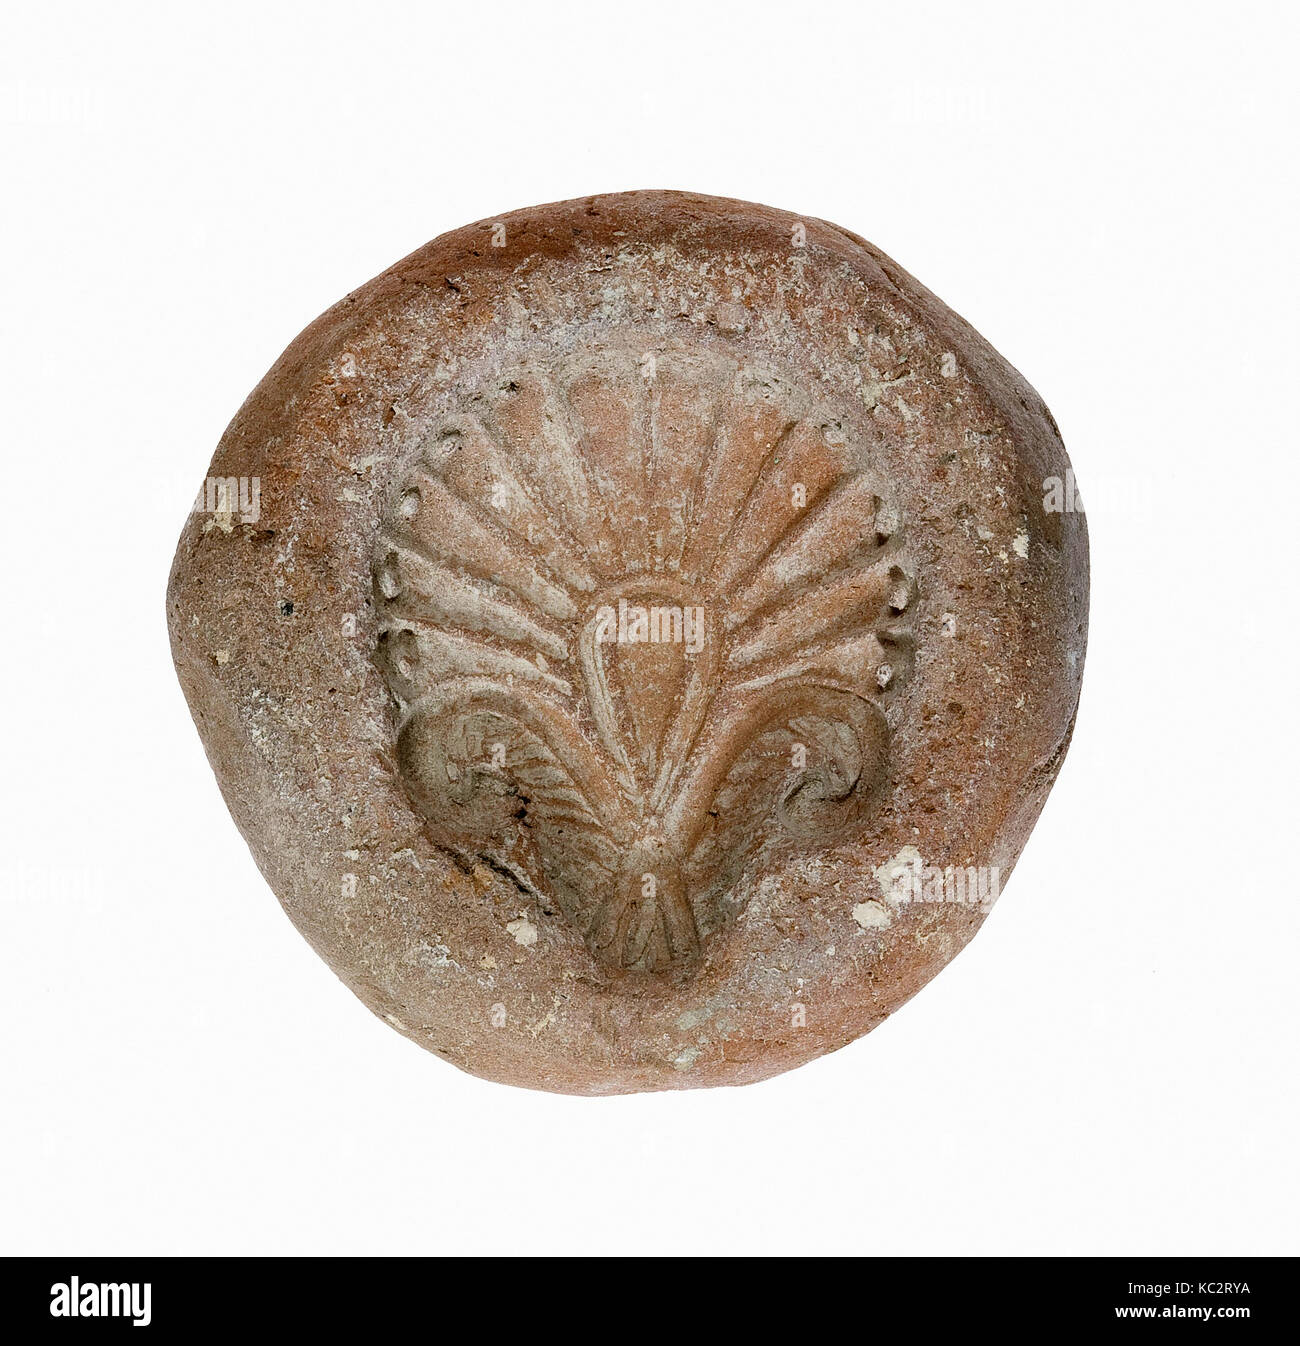 Moule à palmettes, nouveau royaume, Dynasty 18, ca. 1390-1353 av. J.-C., de l'Egypte, la Haute Égypte, Thèbes, Malqata, Palais d'Amenhotep III Banque D'Images